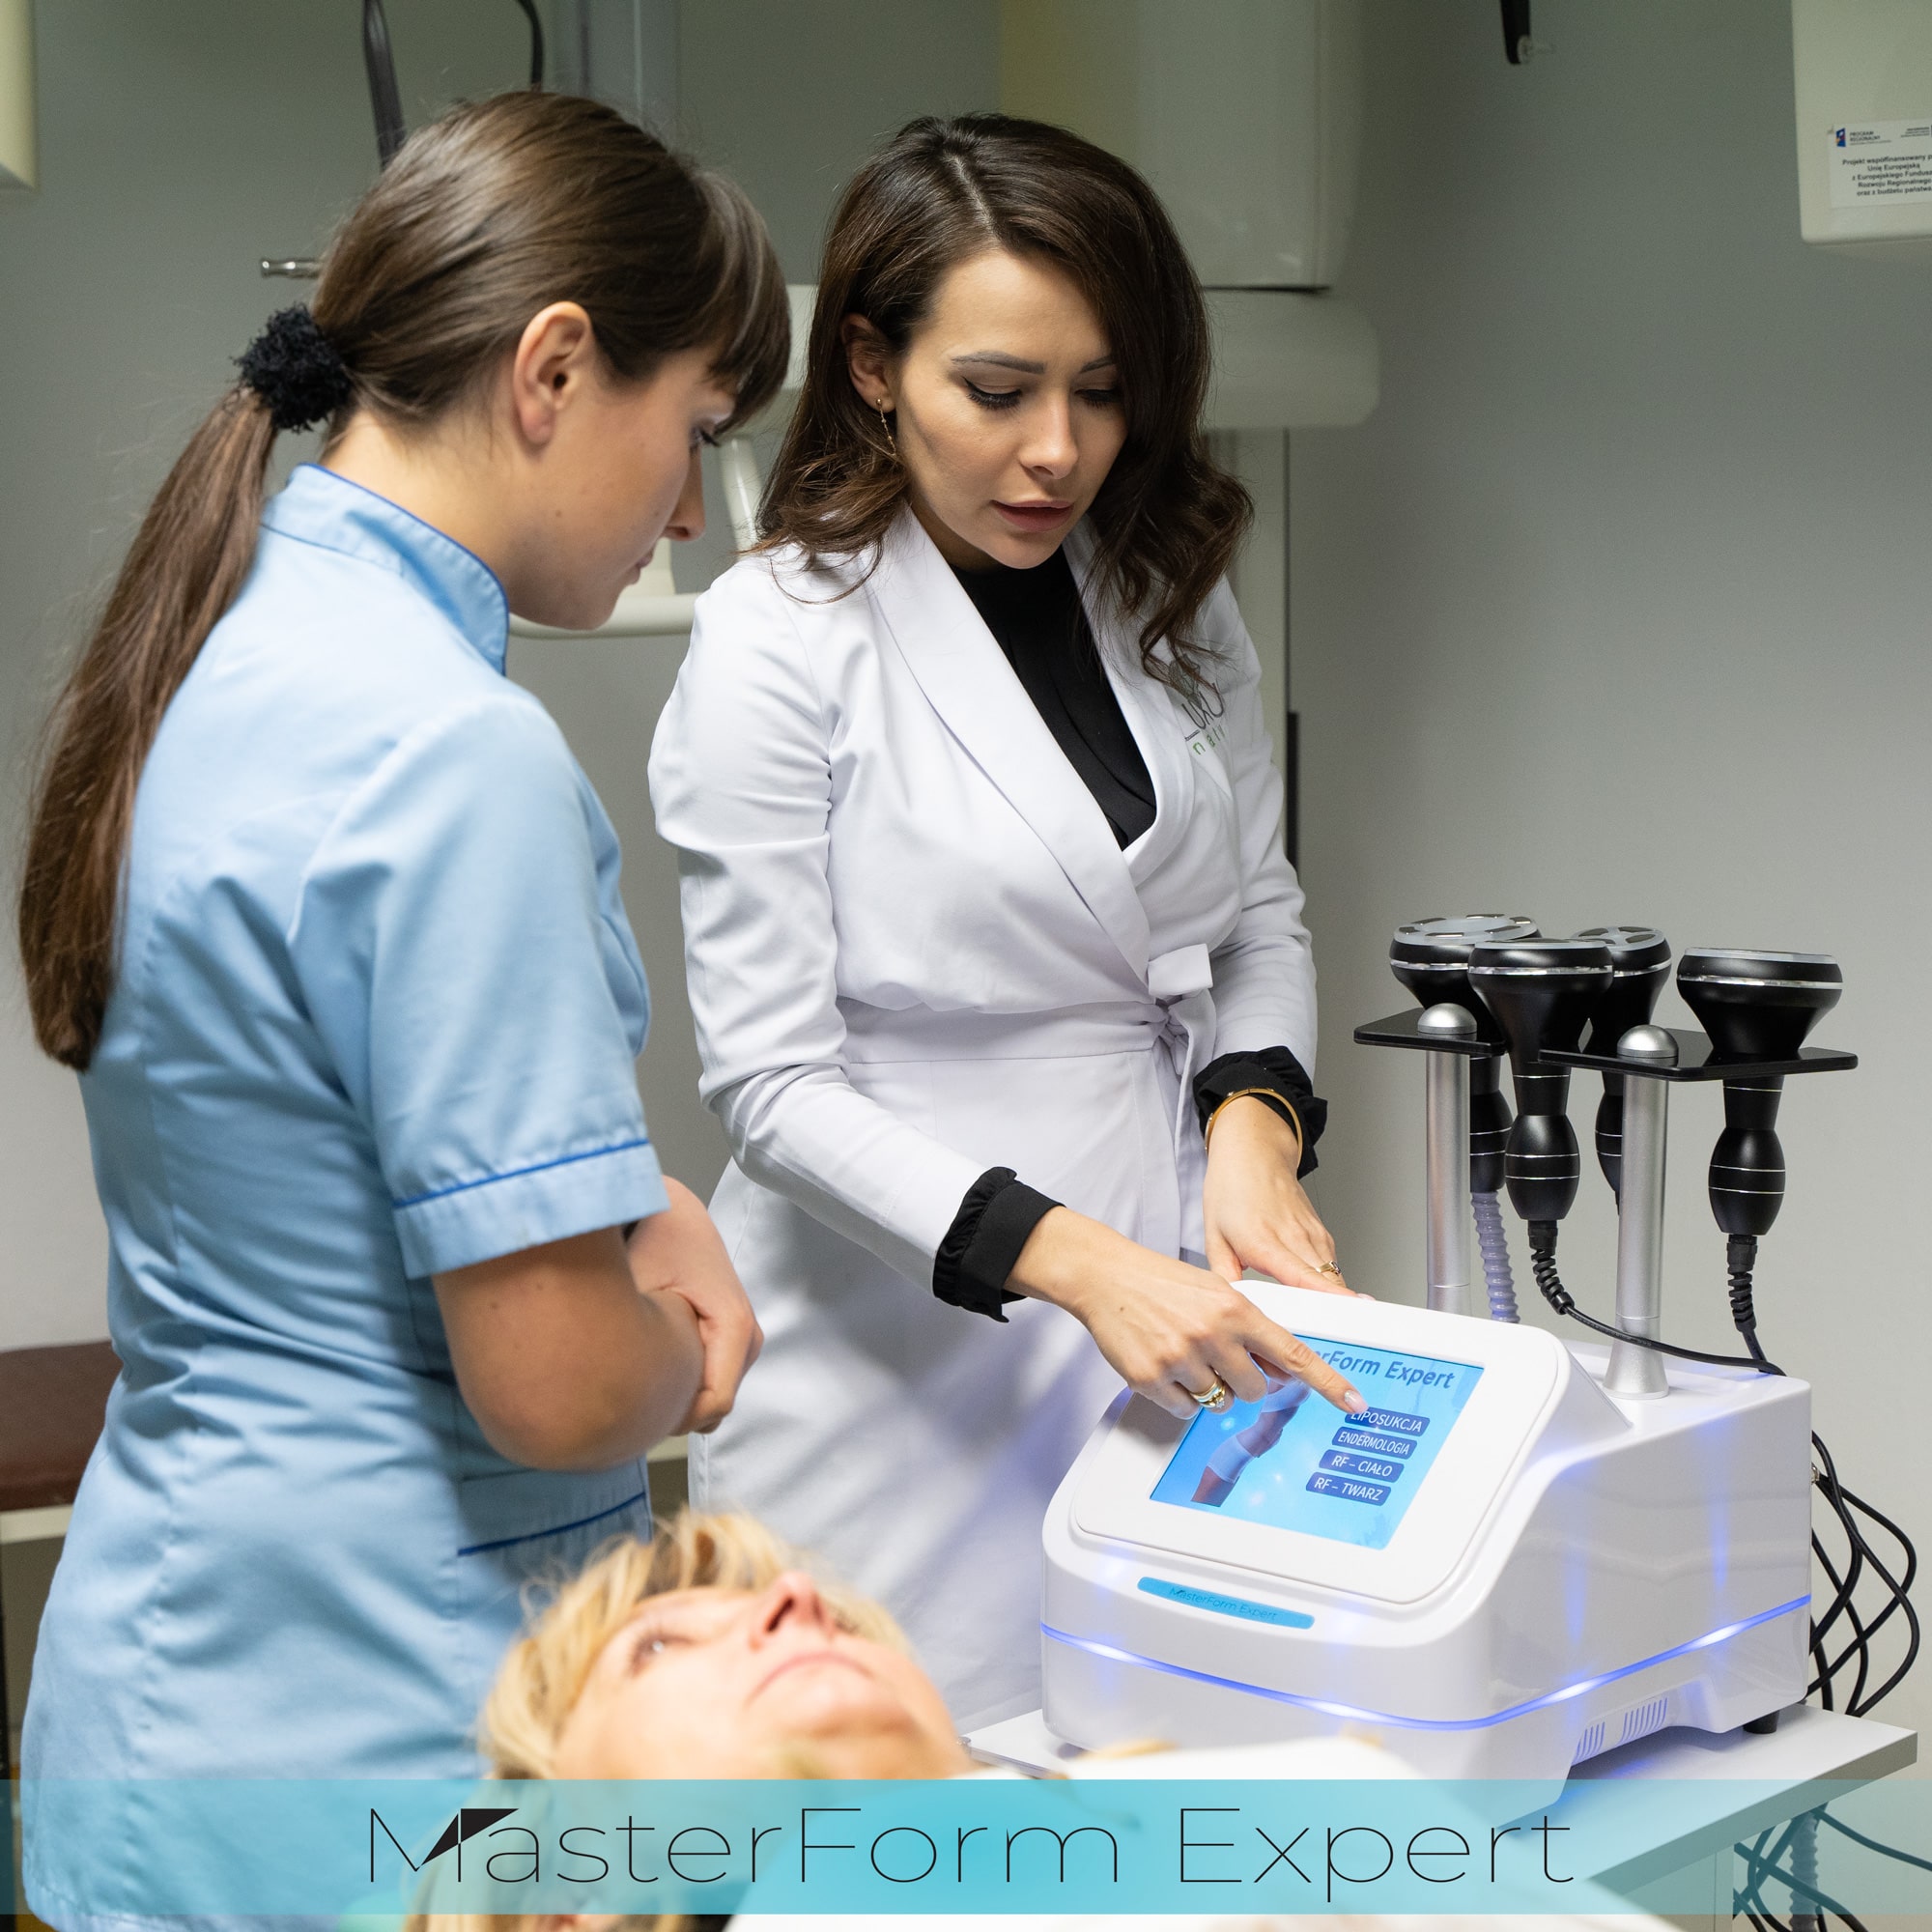 Aparat MasterForm Expert posiada 4 różne programy zabiegowe - liposukcja, endermologia, RF ciało i RF twarz